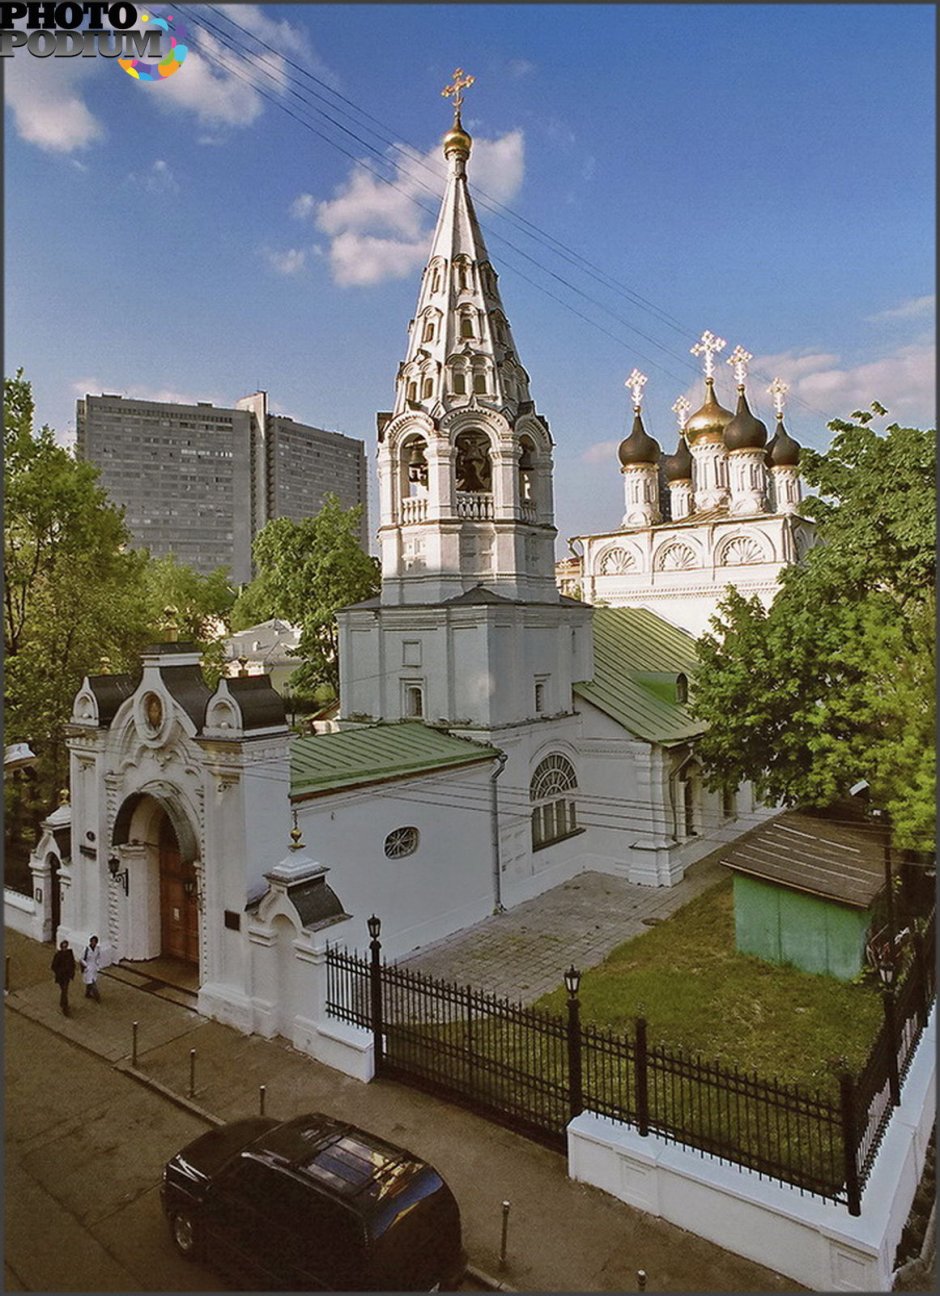 Православный храм в Красноярске